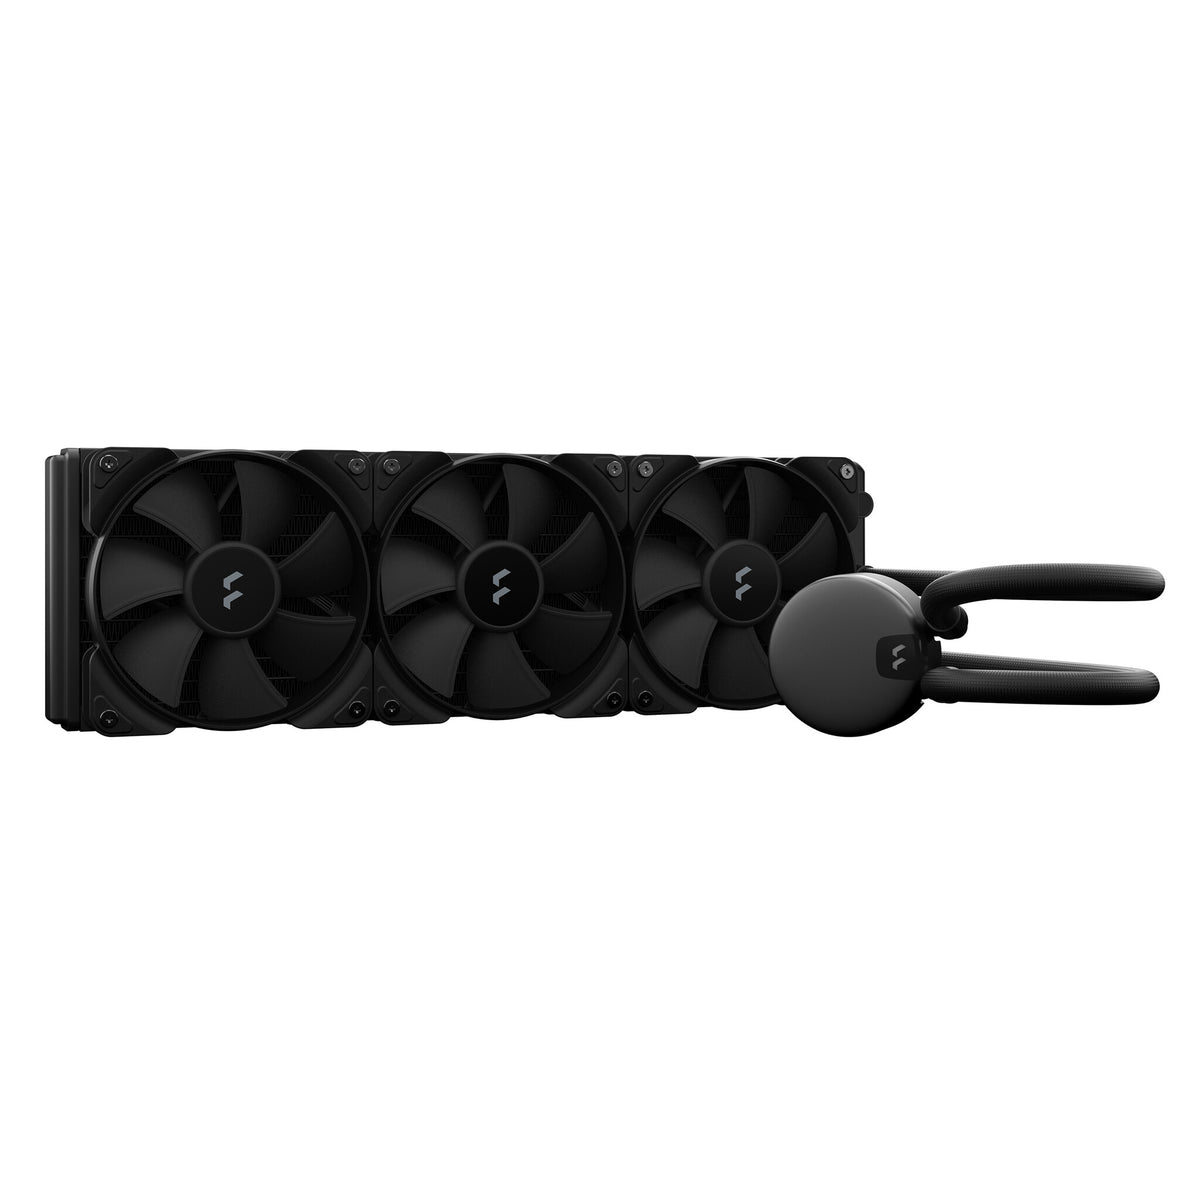 Fractal Design Lumen S36 v2 - All-in-one Liquid Processor Cooler in Black - 360mm